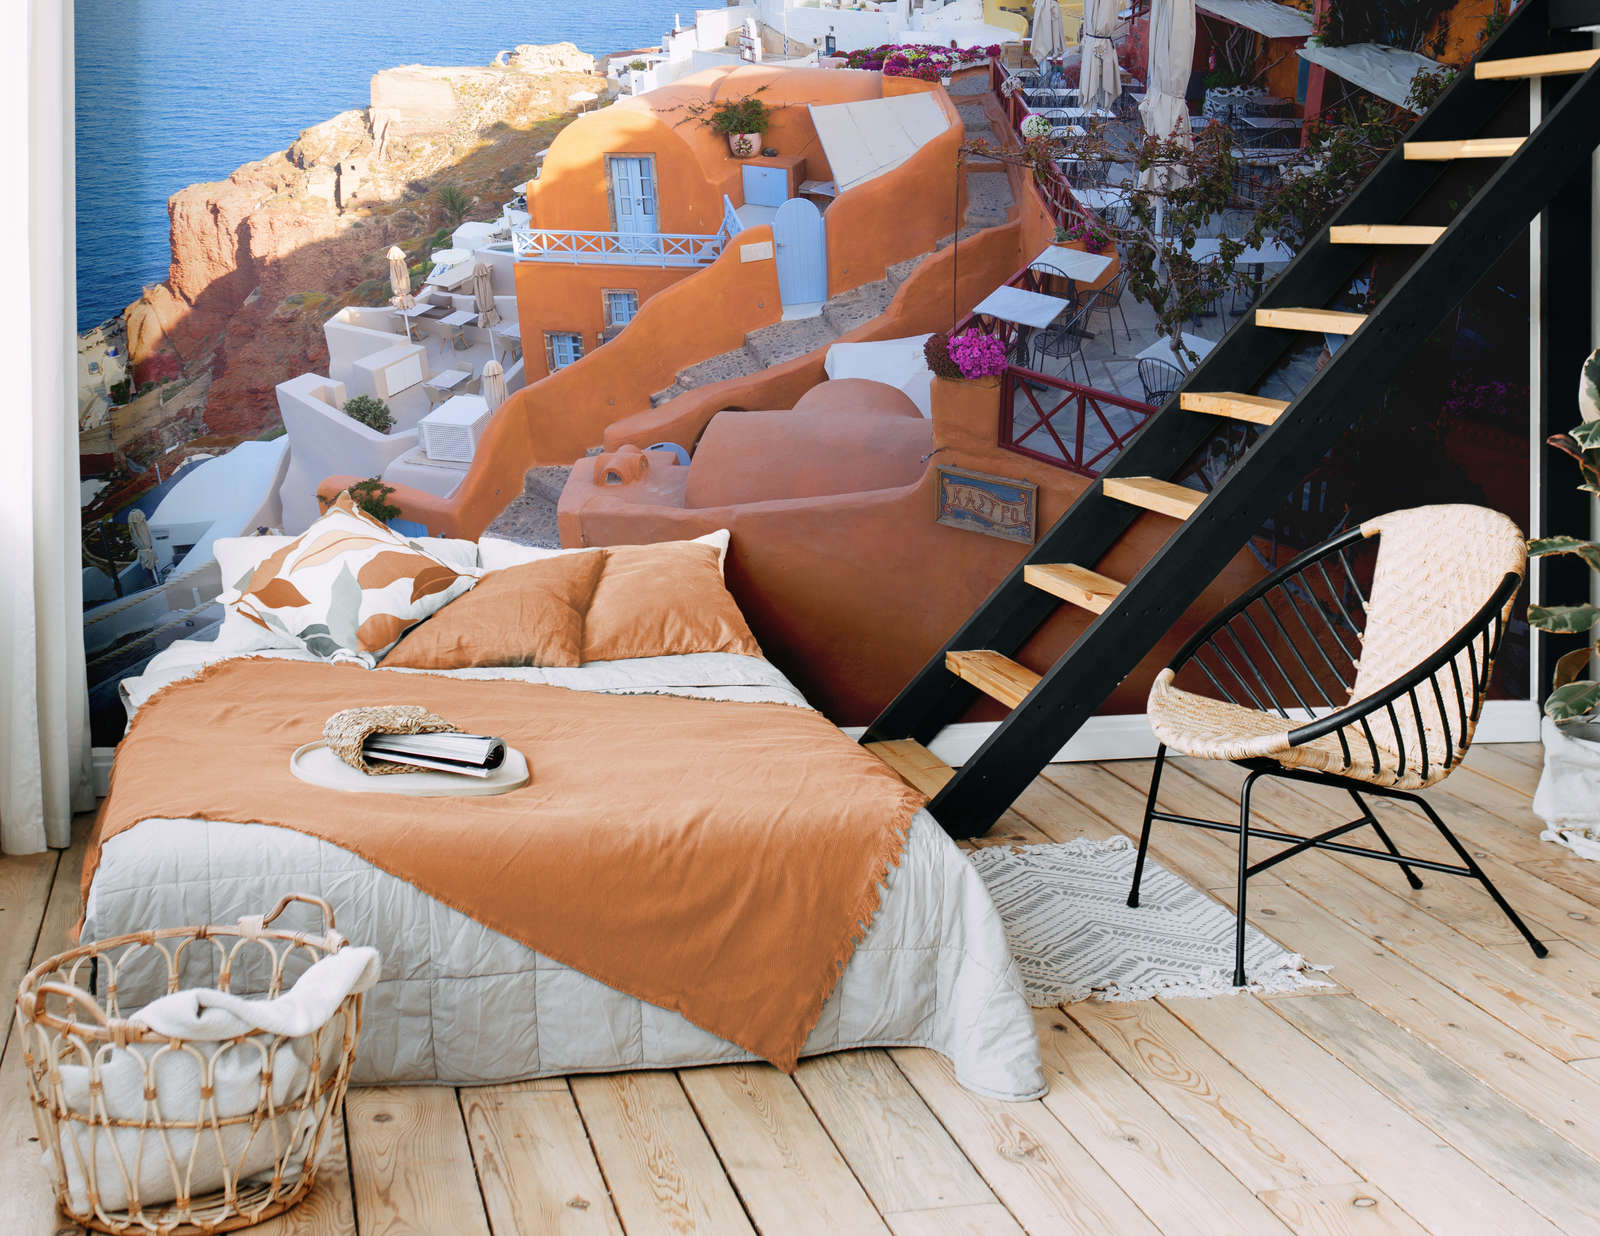             Fototapete Terrasse an der Küste Santorinis – Perlmutt Glattvlies
        